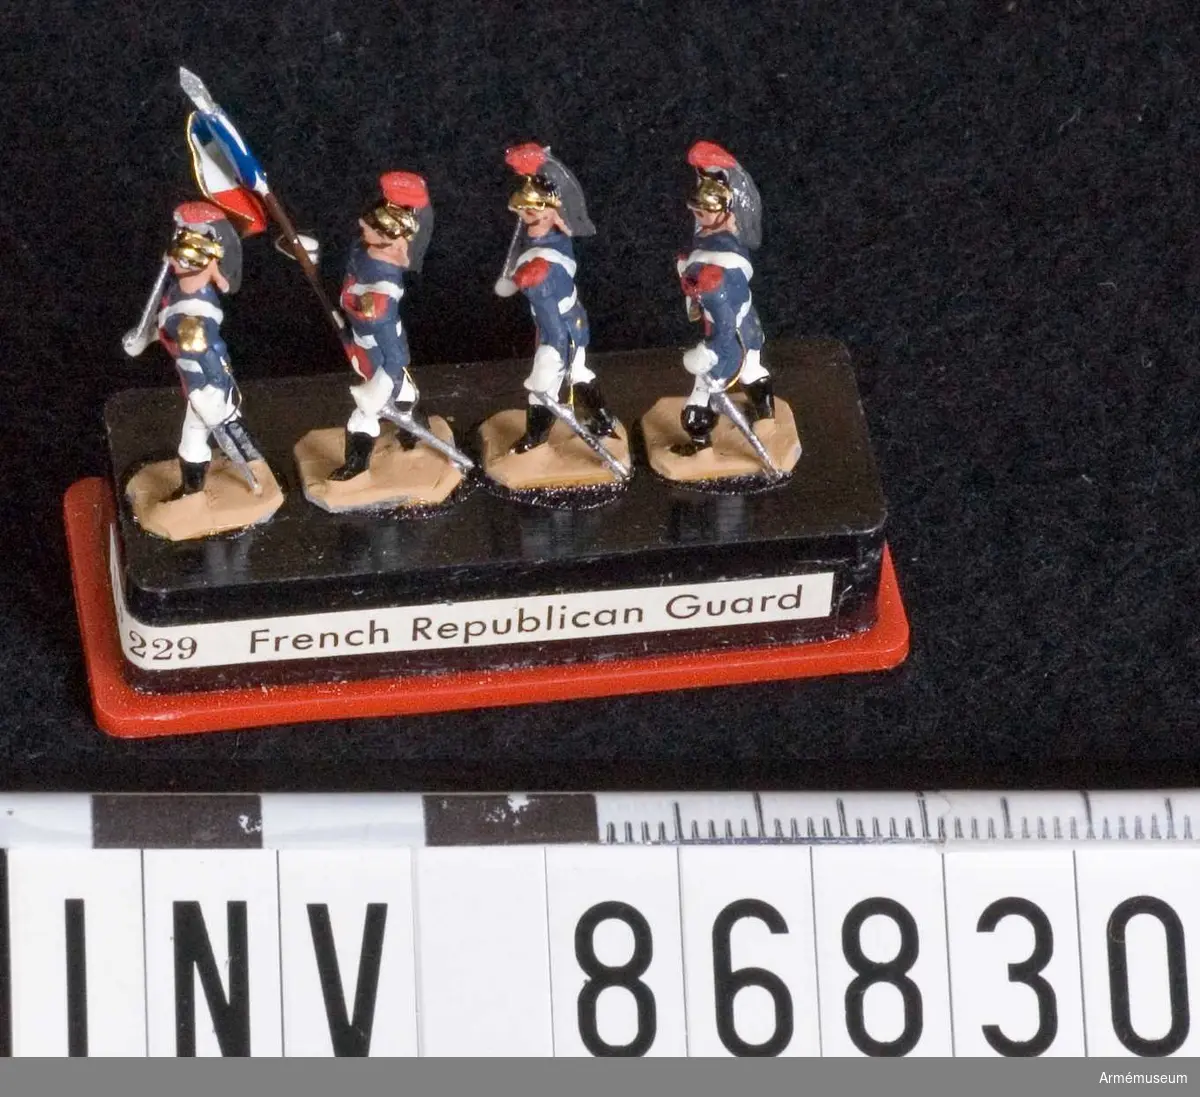 Grupp M V. Föreställer fyra soldater (varav en fanförare), sannolikt ur franska Republikanska gardet. Samtliga på platta och i plastfodral.